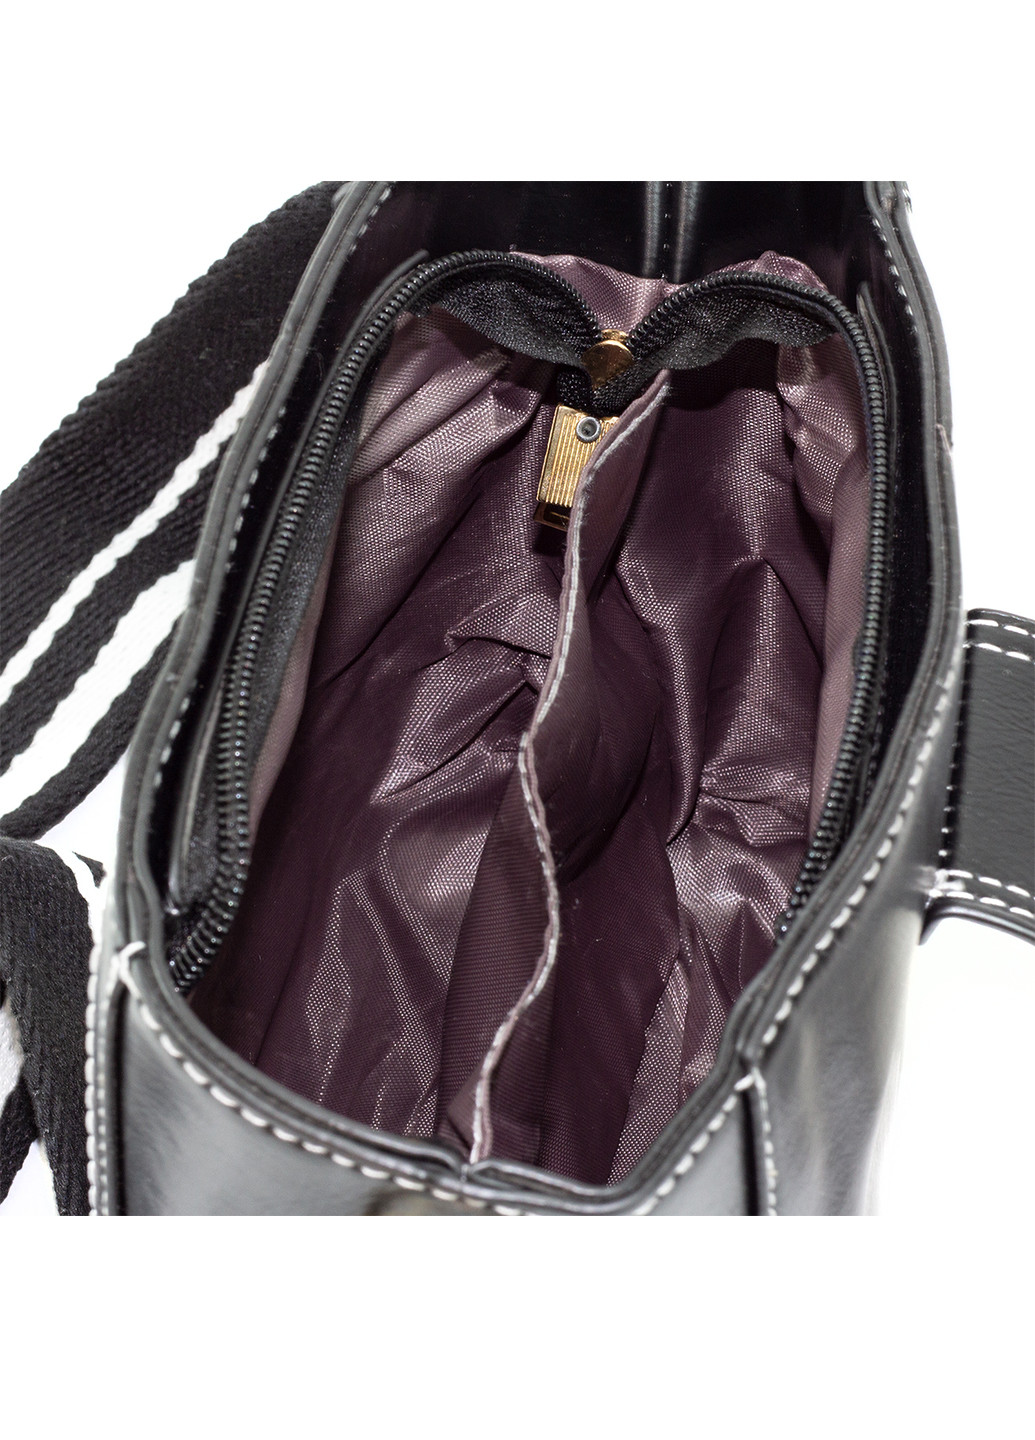 Небольшая женская сумка-клатч Черная Corze ab13007 (225538355)